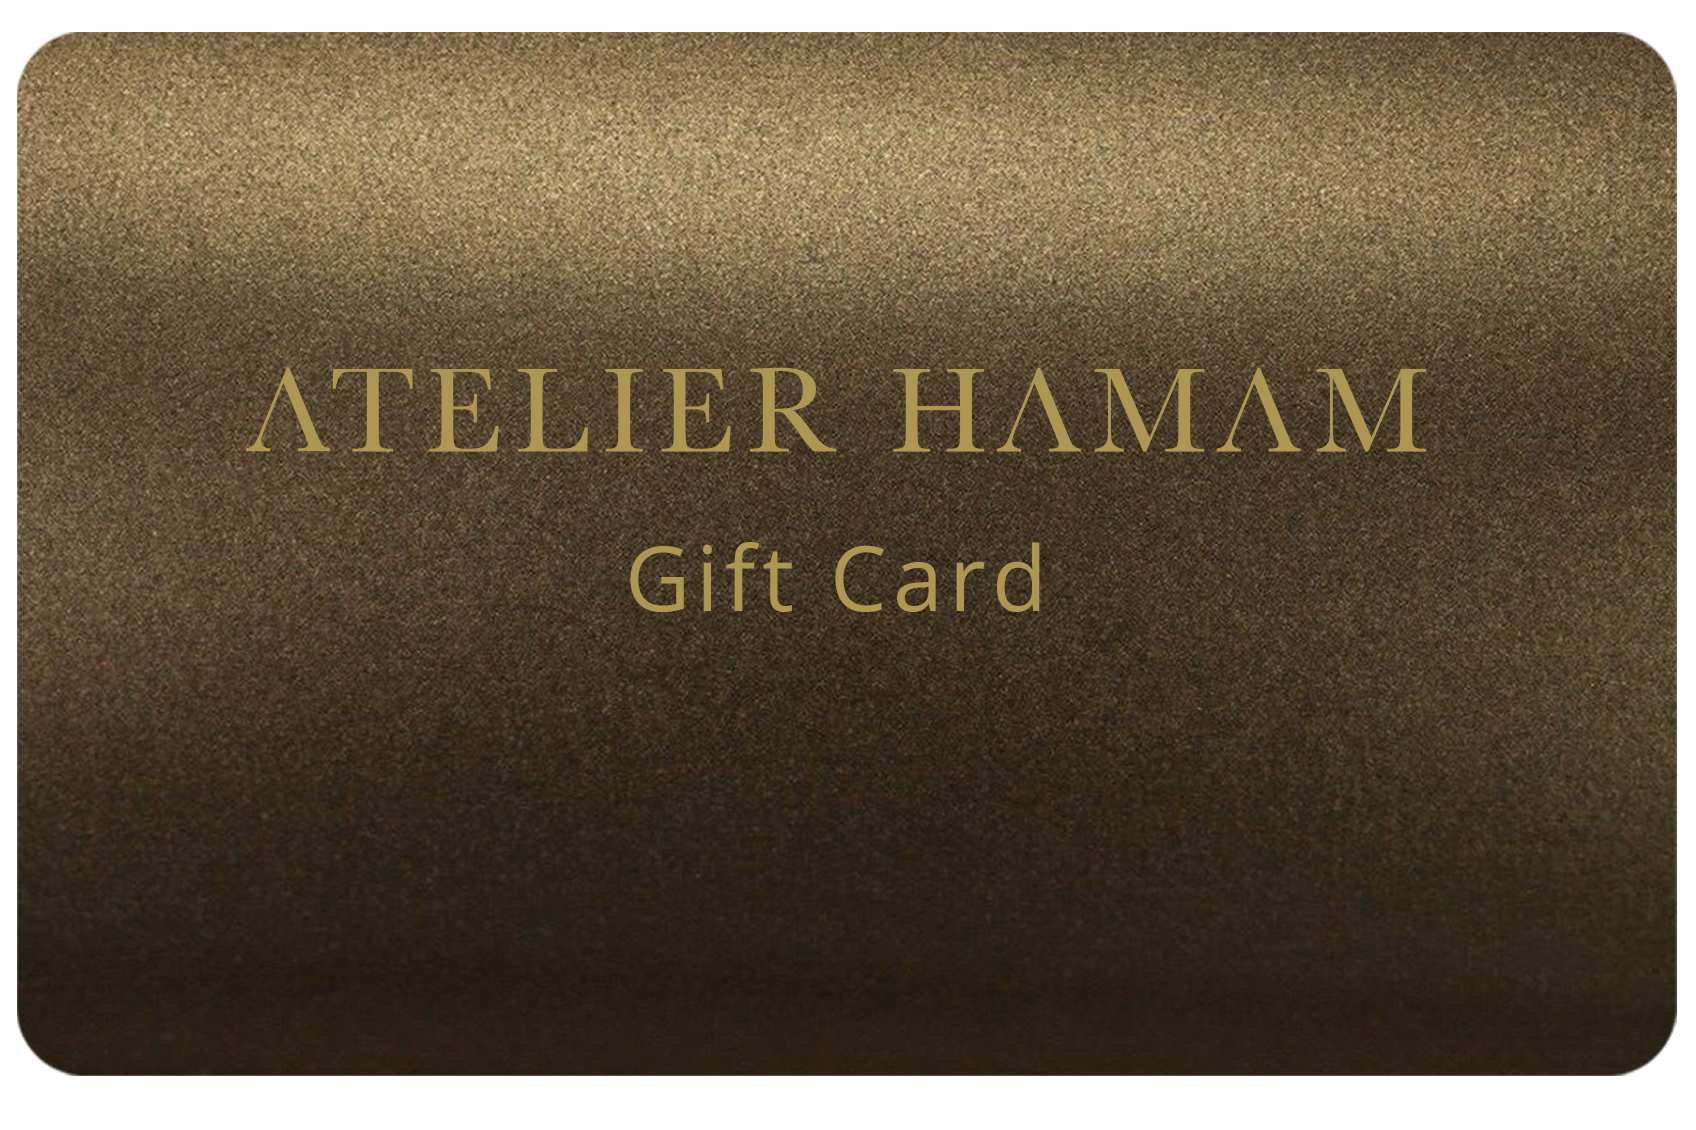 bronze schimmernde gift card mit goldener atelier hamam aufschrift.